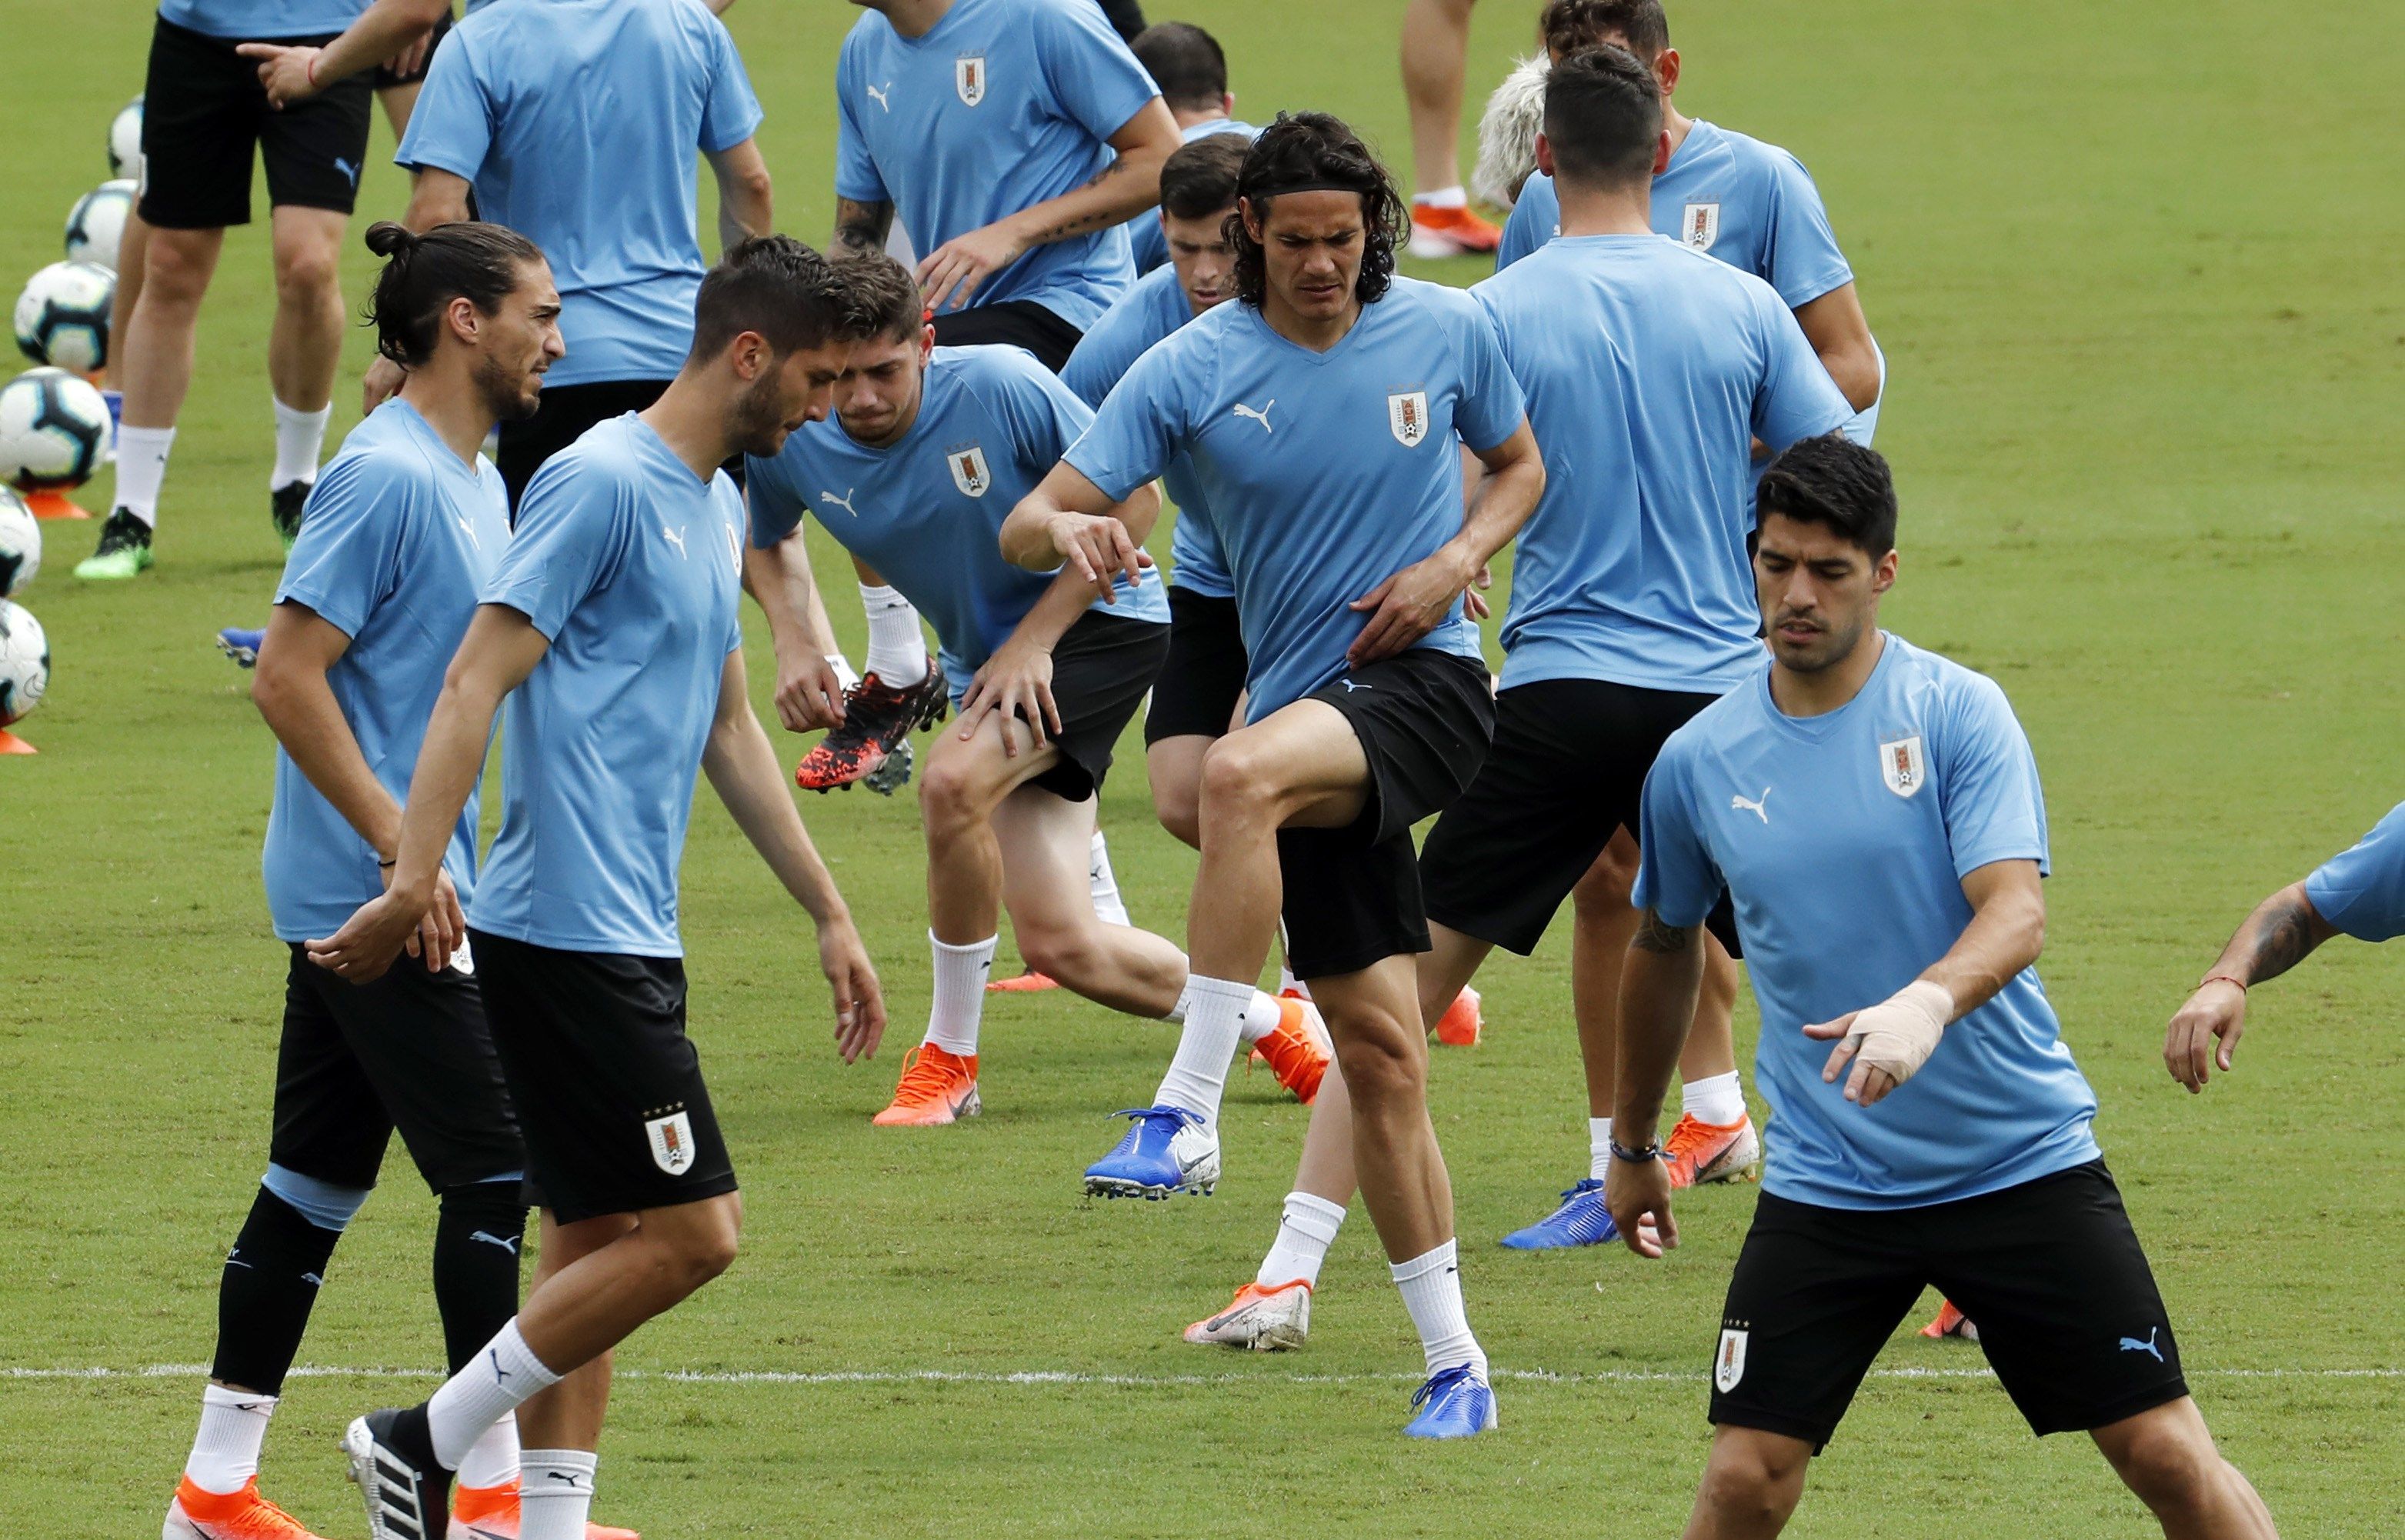 Los jugadores de la selección de fútbol de Uruguay se alistan para el juego contra los peruanos. (Foto Prensa Libre: AFP)